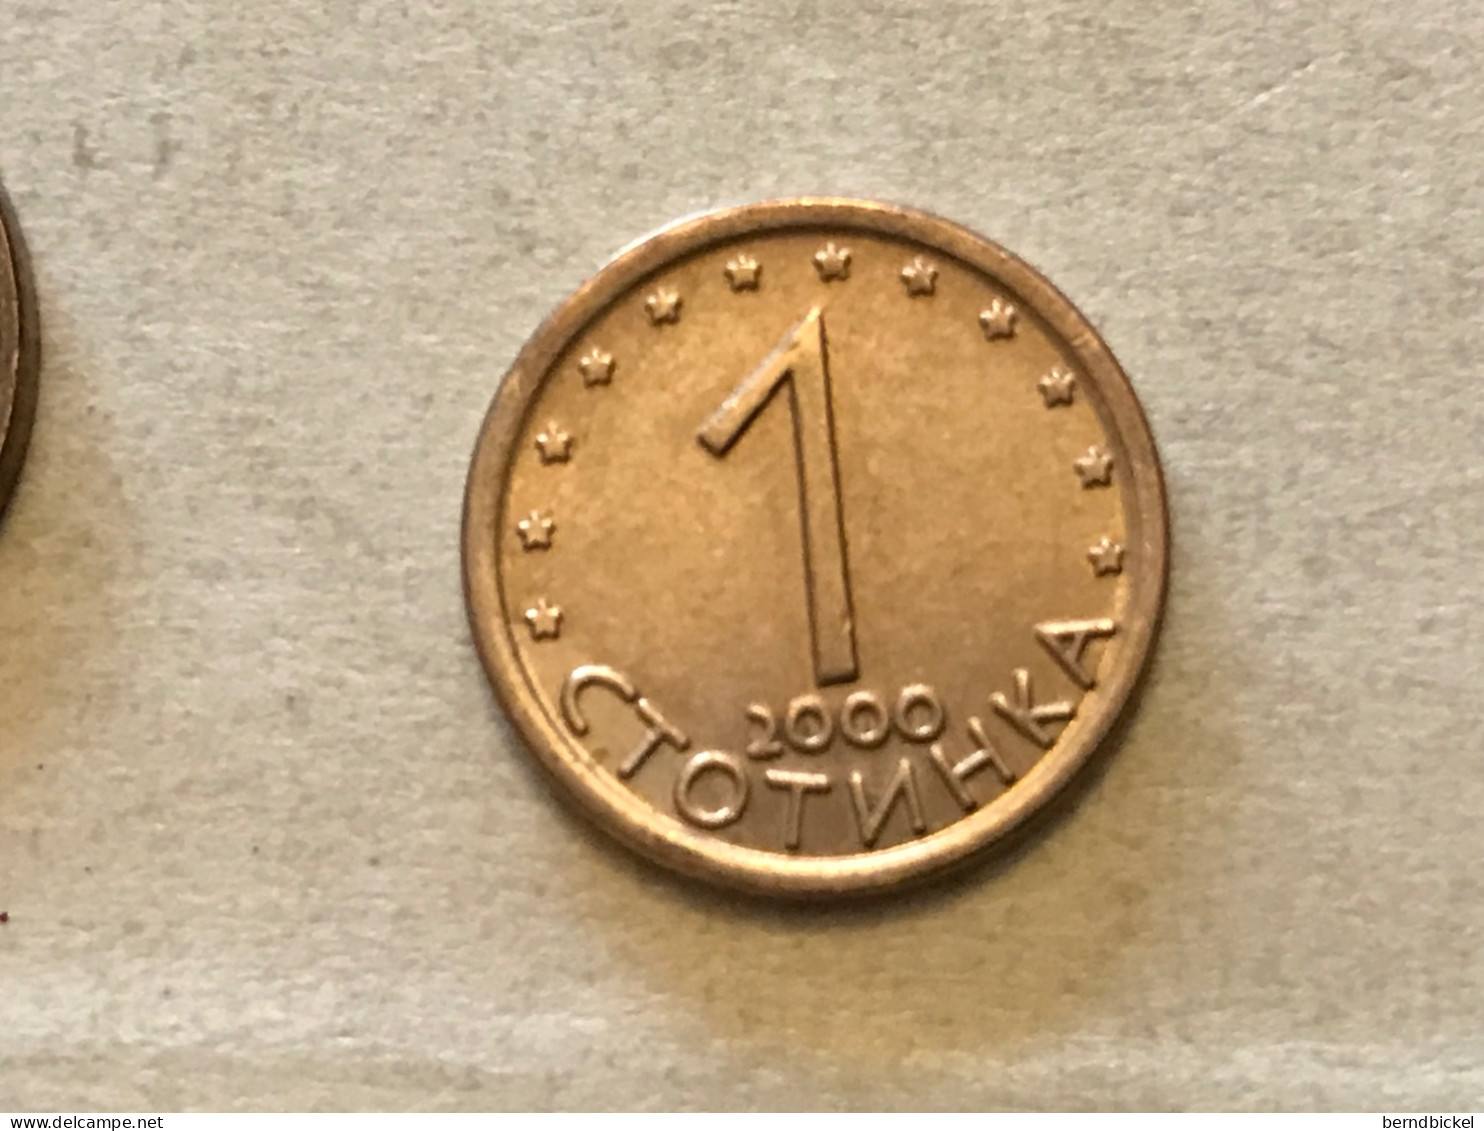 Münze Münzen Umlaufmünze Bulgarien 1 Stotinka 2000 - Bulgaria